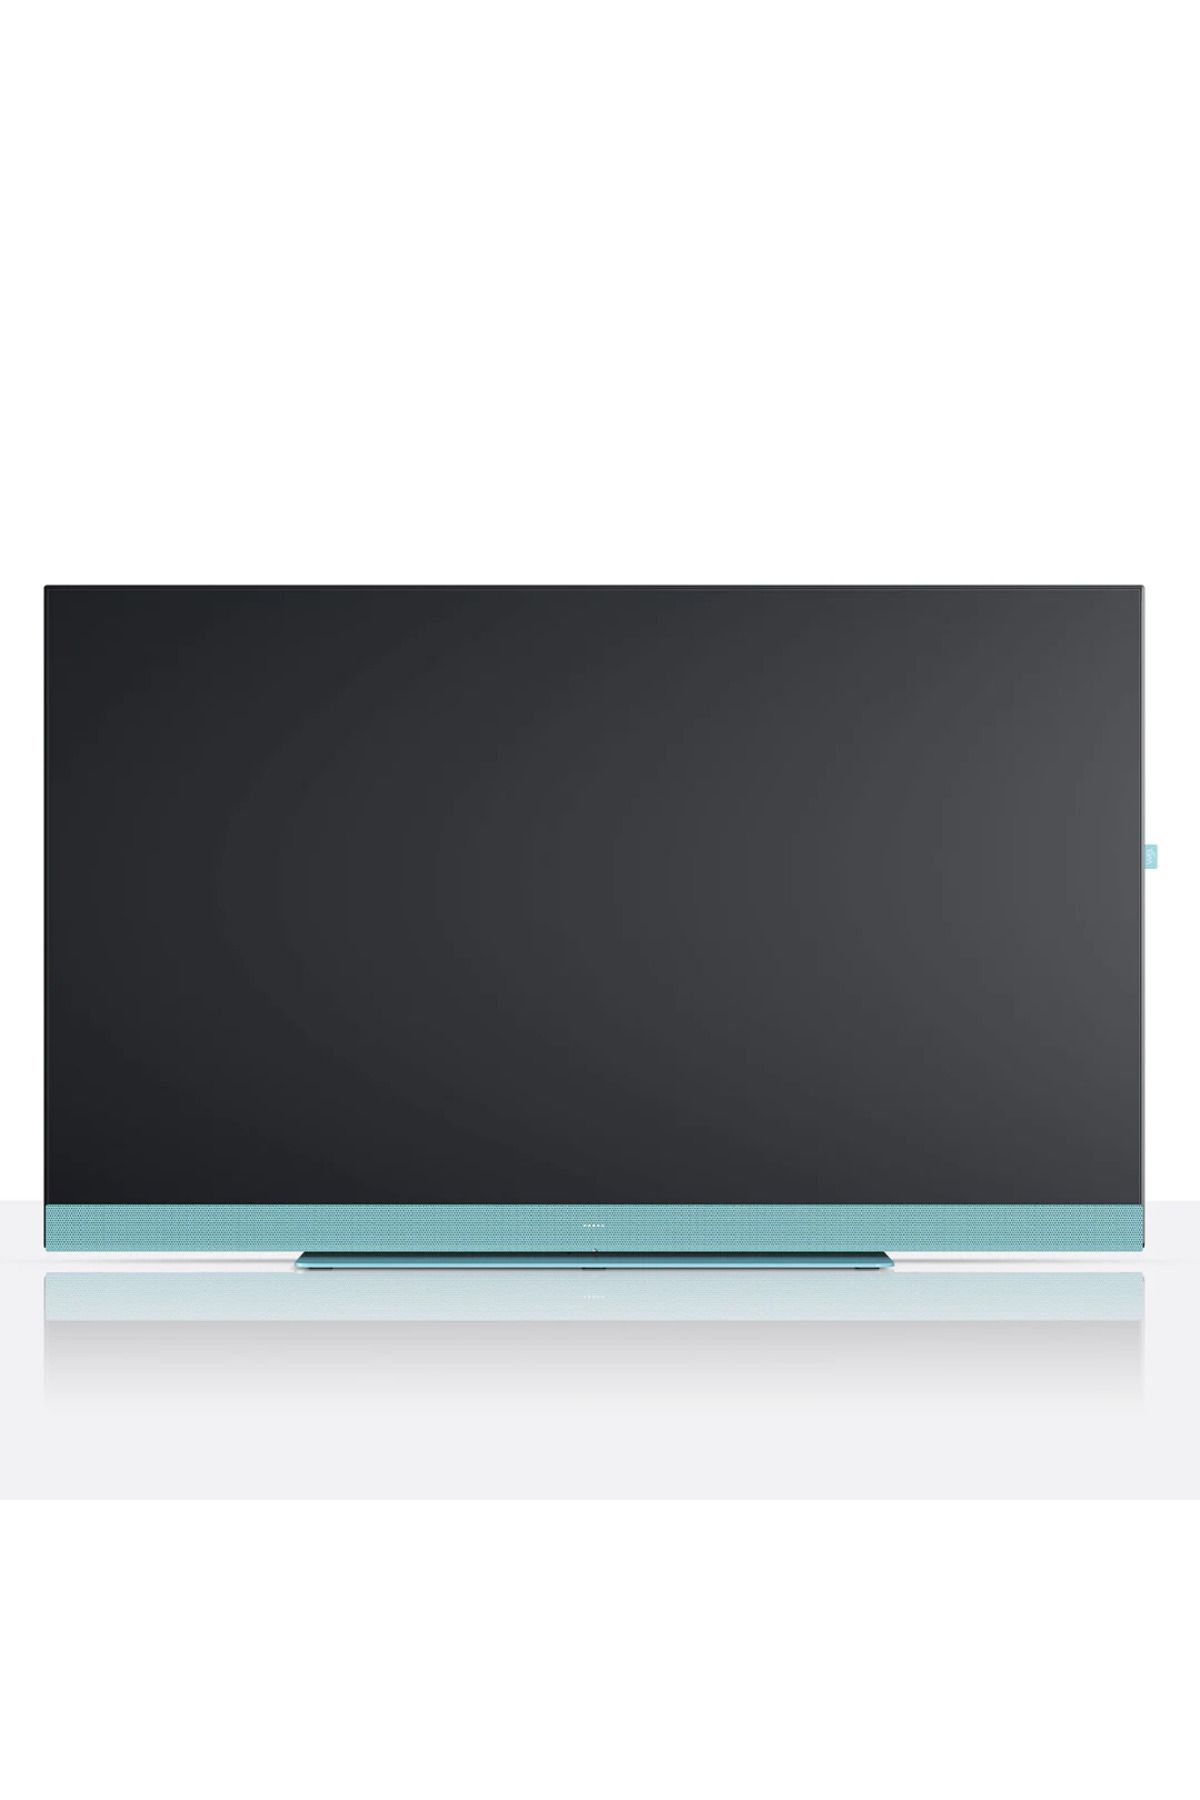 Loewe We See 32" Ultra Hd Led Streaming Tv Aqua Blue